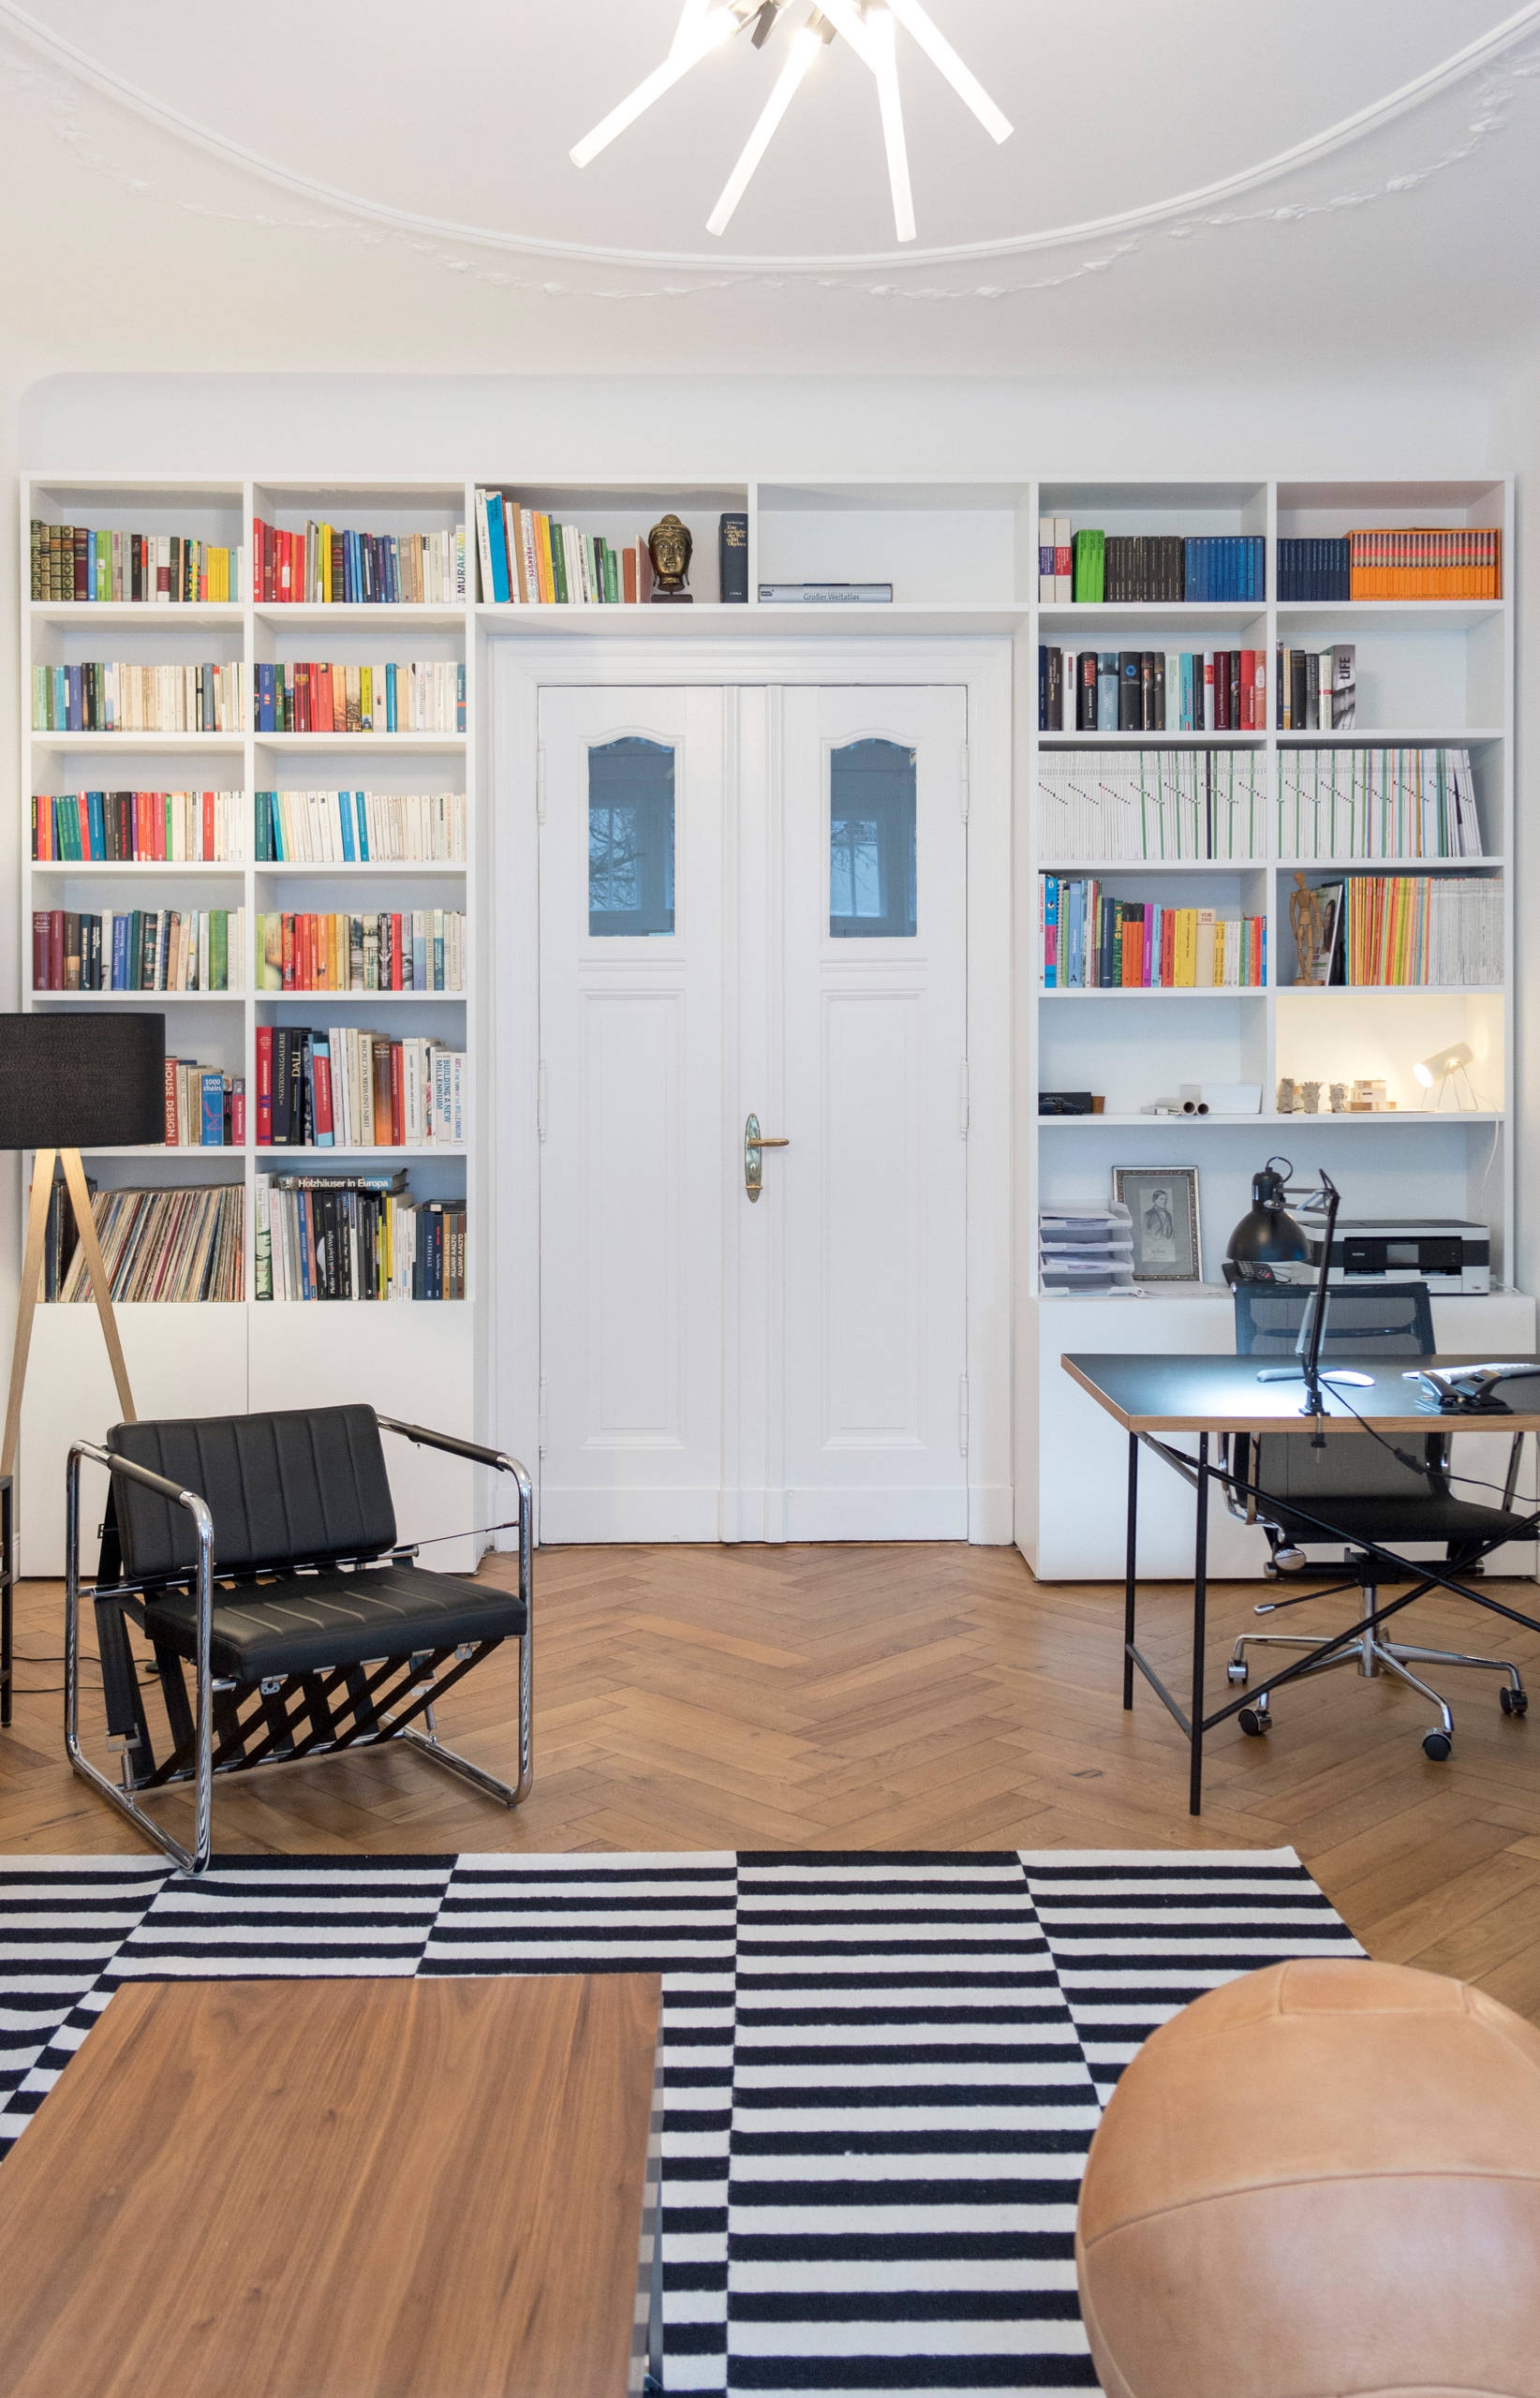 GANTZ - Bücherregal nach Maß um Tür - Contemporary - Living Room - Berlin -  by GANTZ – Regale und Einbauschränke nach Maß | Houzz